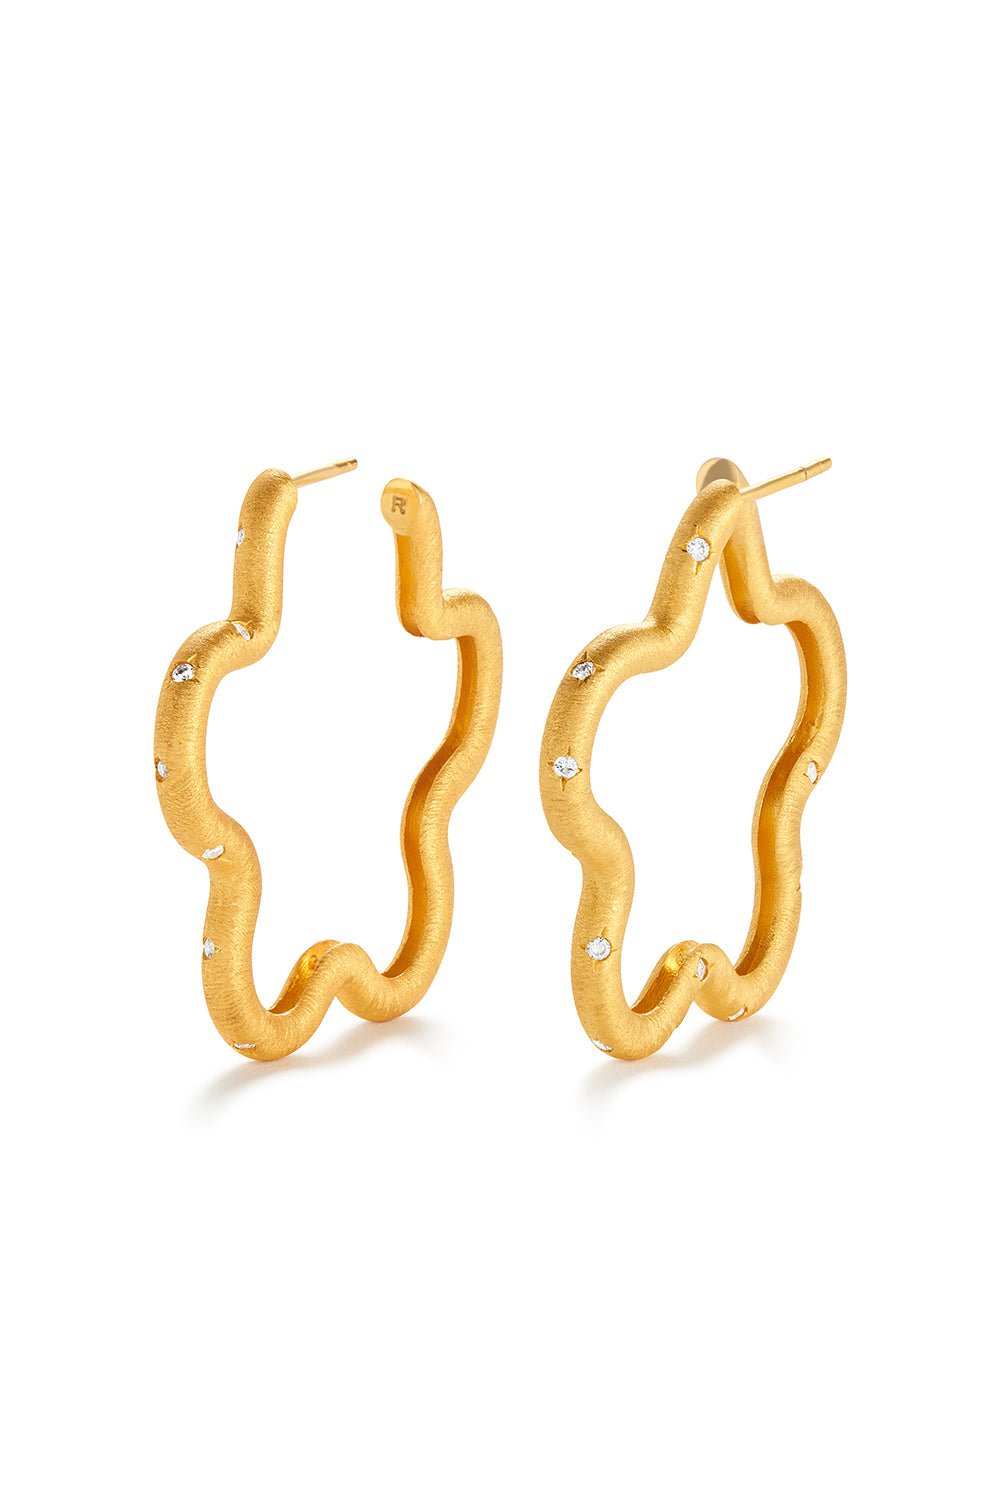 Amina Sorel Fine Jewelry-FLEUR DIAMOND HOOP EARRINGS-YELLOW GOLD